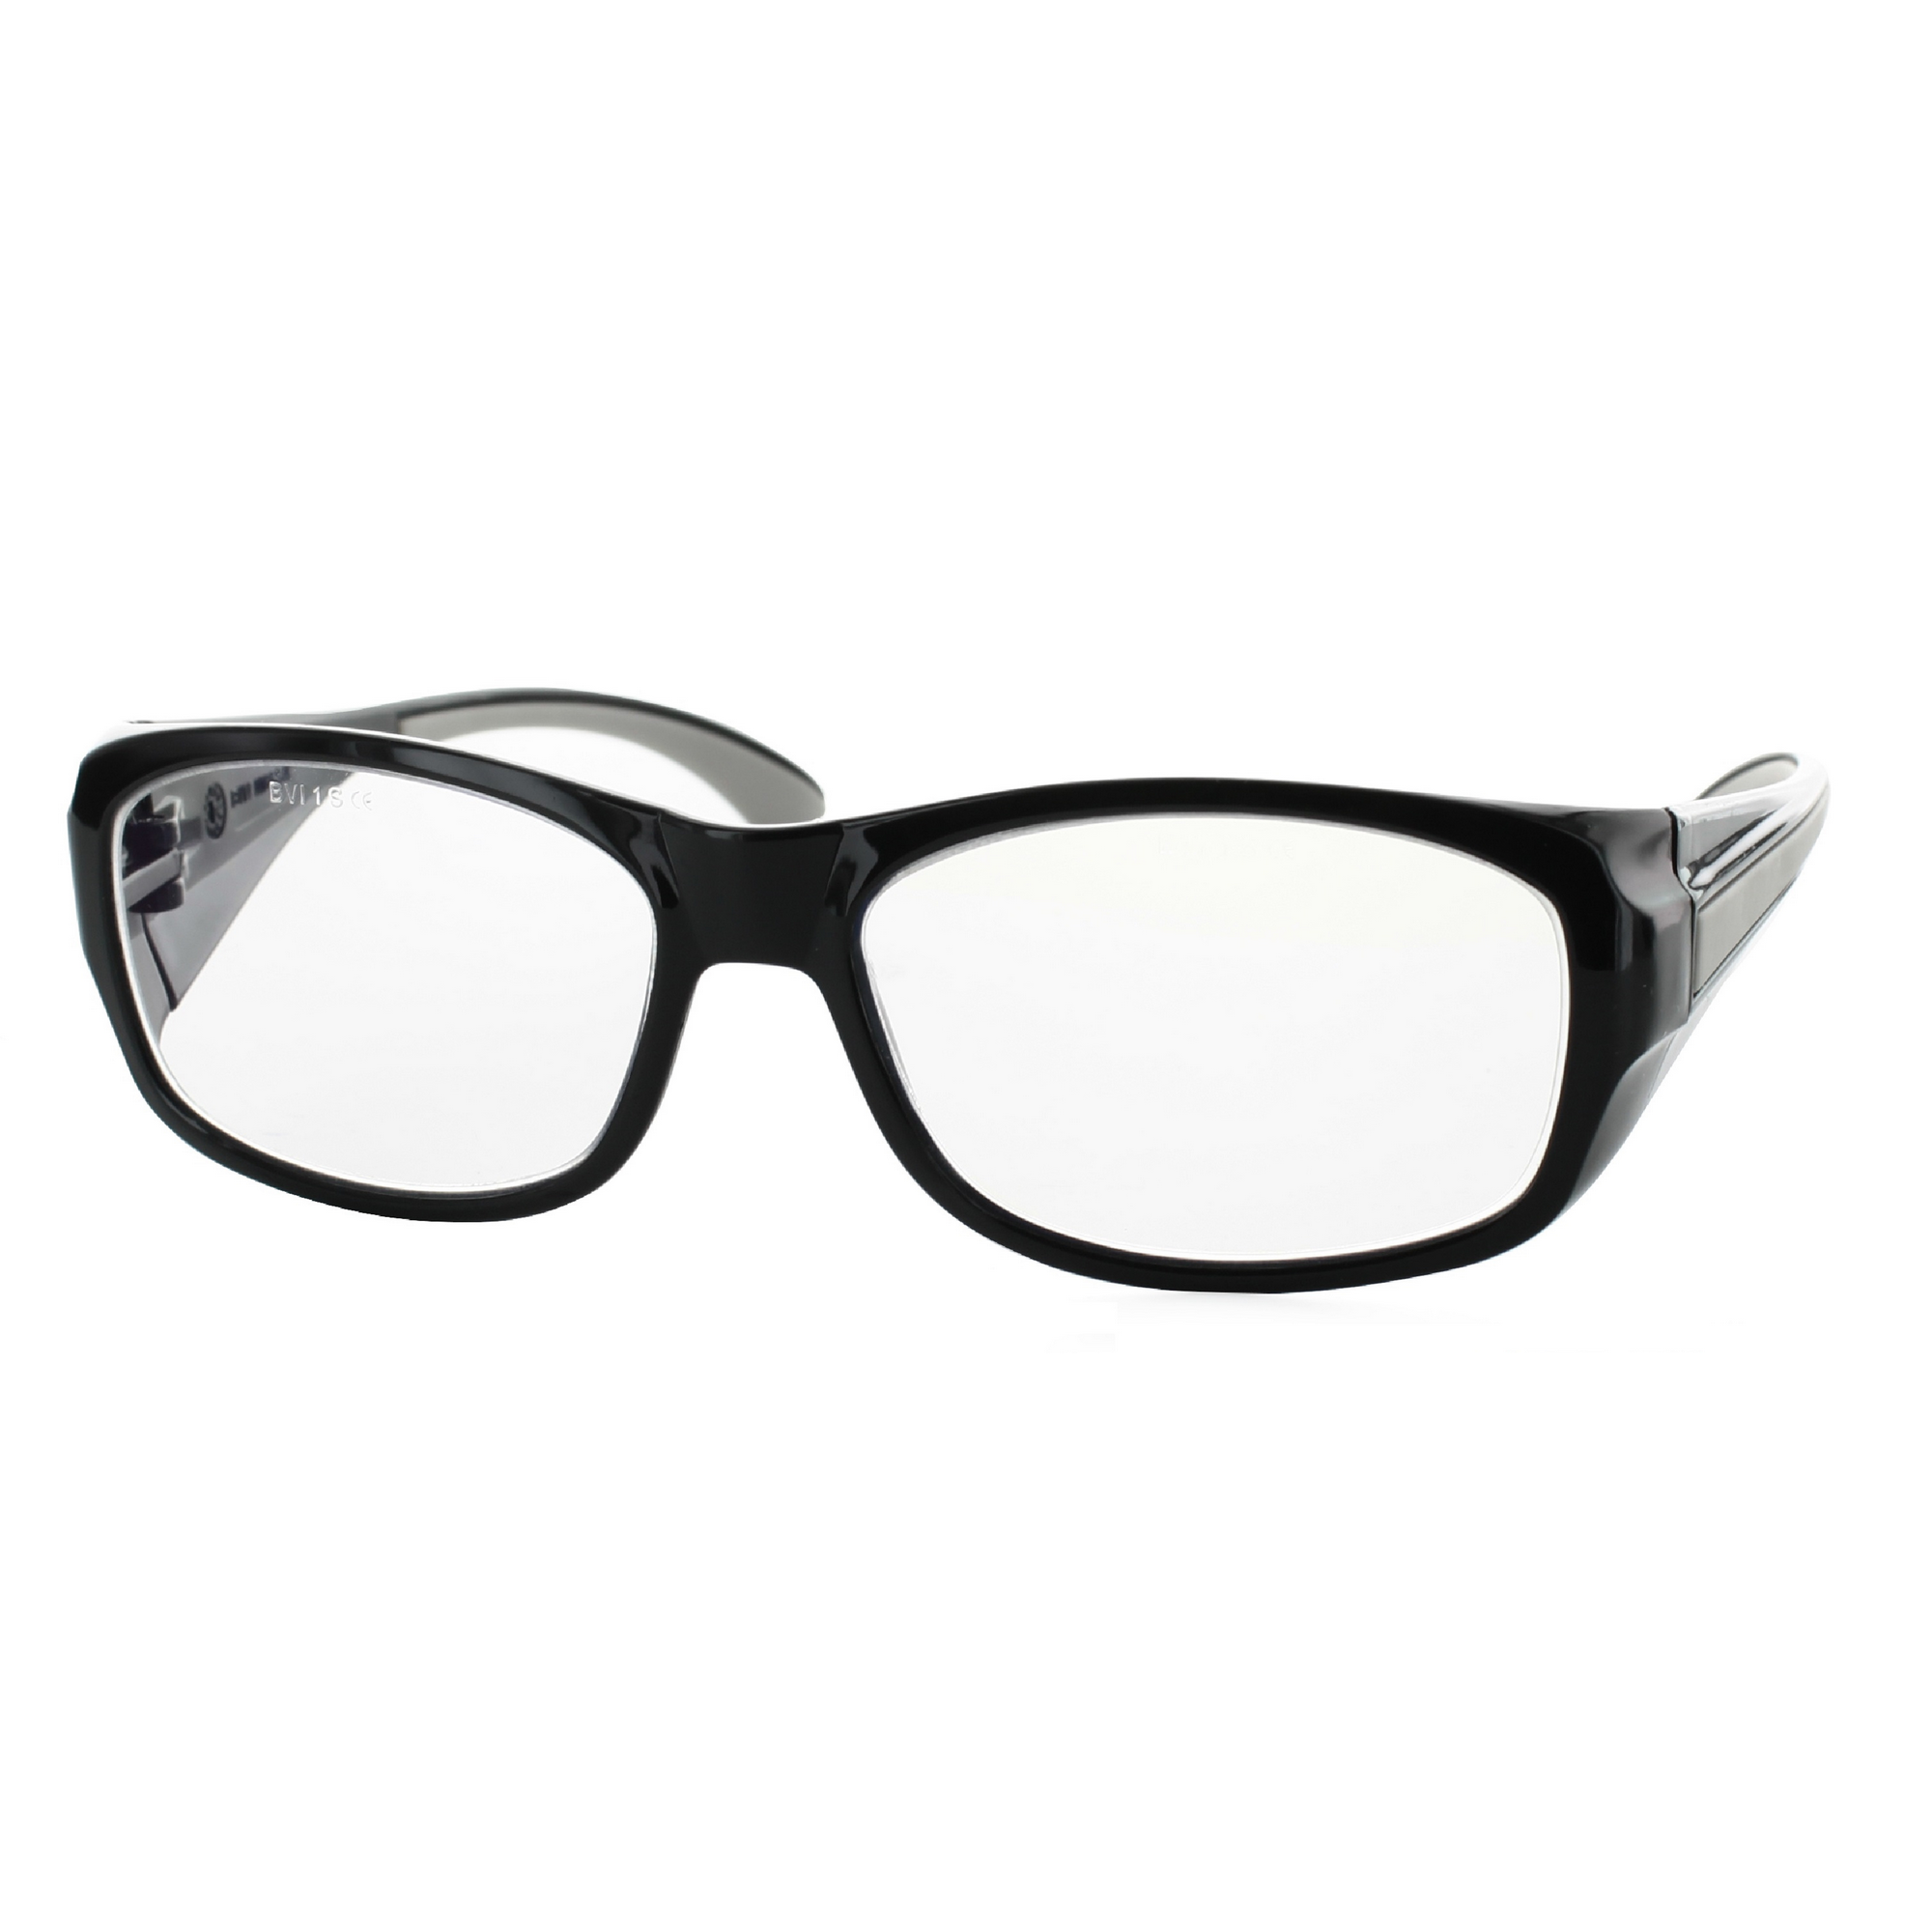 Multidistanz-Schutzbrille 'Tech 3in1 300' schwarz + 3,00 Dioptrien + product picture